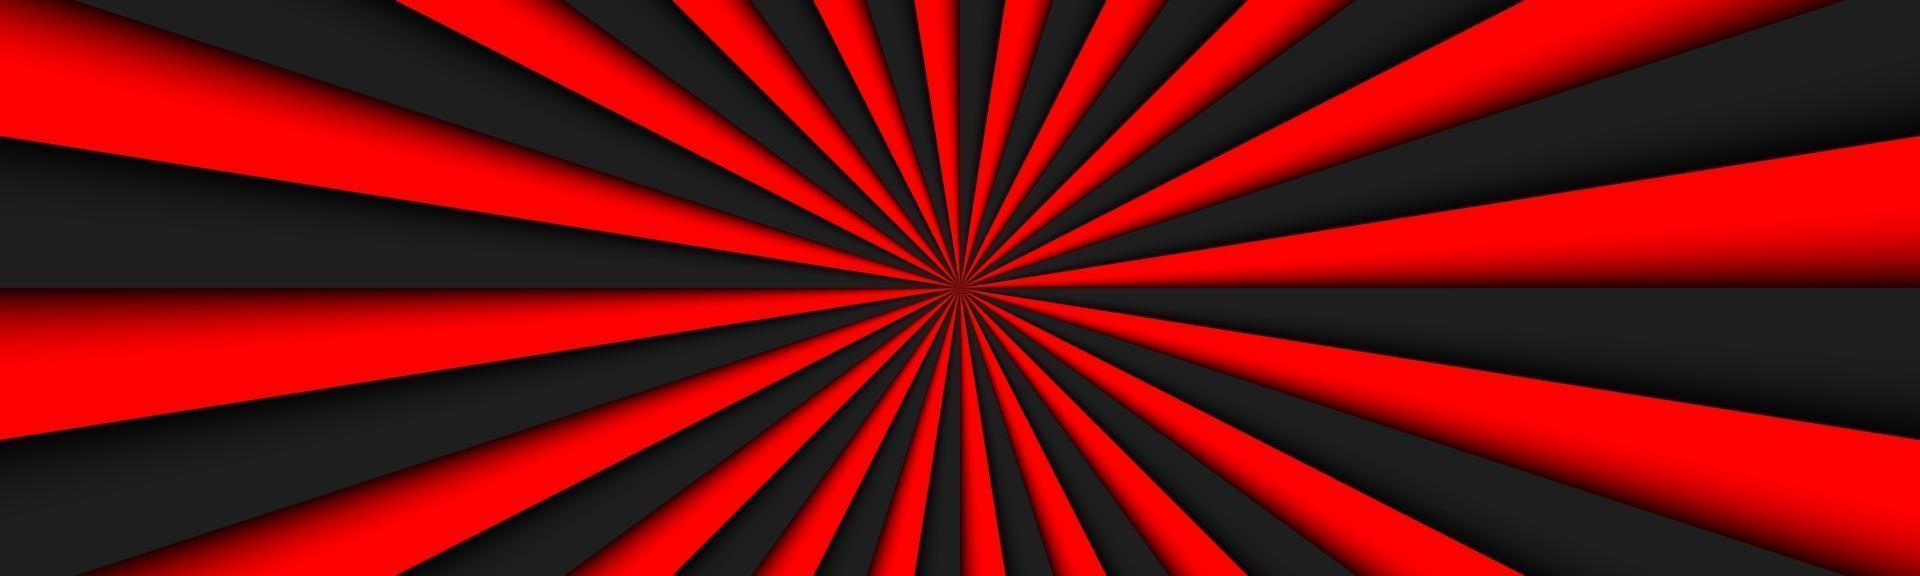 schwarze und rote abstrakte Kopfzeile schwarze und rote Linien Banner helles Muster einfache Vektorillustration vektor